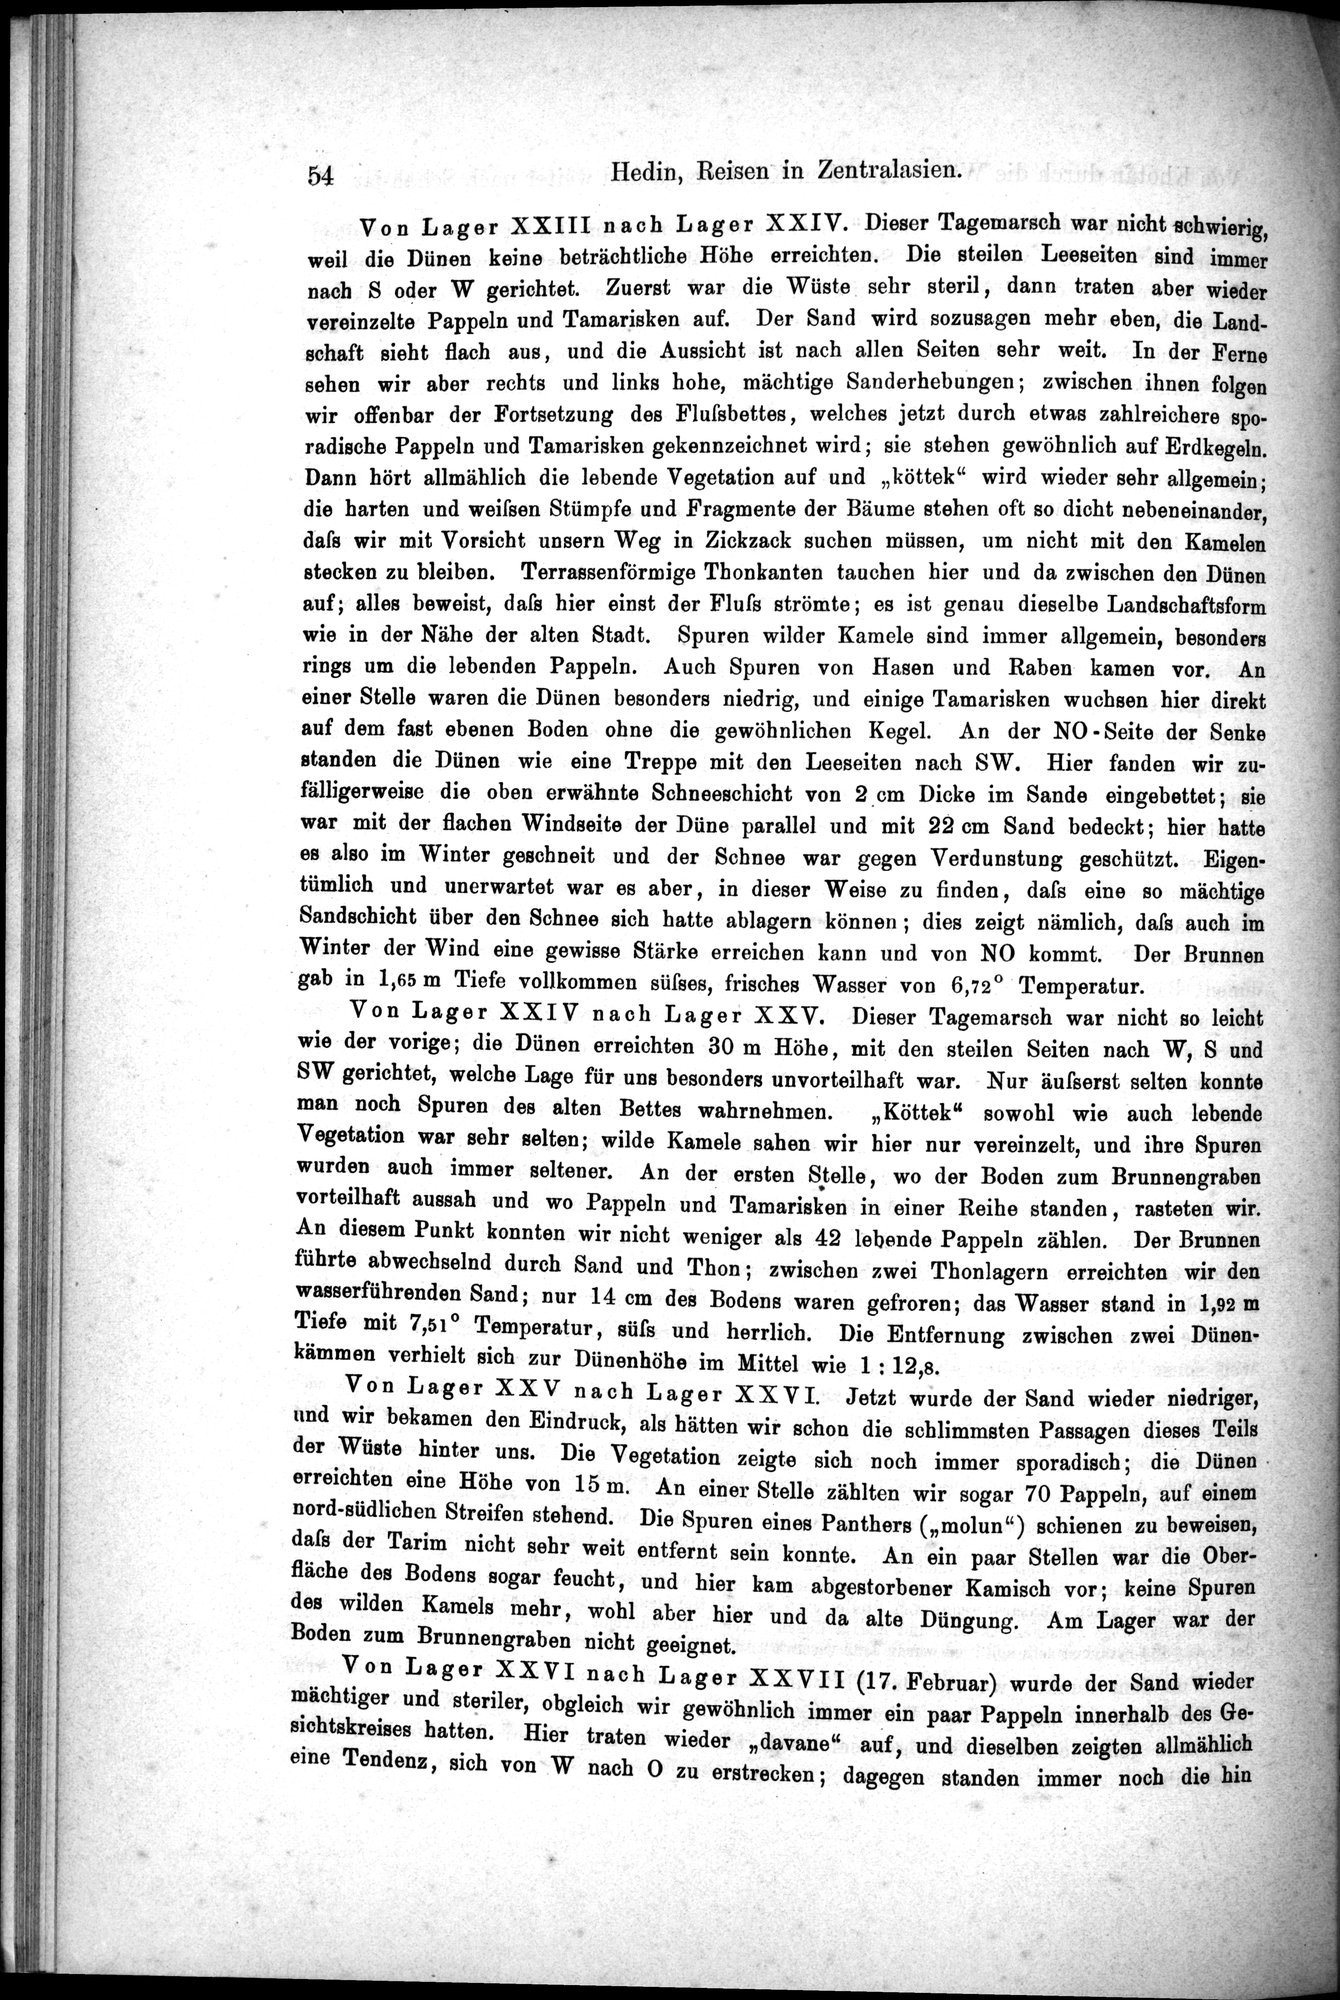 Die Geographische-Wissenschaftlichen Ergebnisse meiner Reisen in Zentralasien, 1894-1897 : vol.1 / Page 66 (Grayscale High Resolution Image)